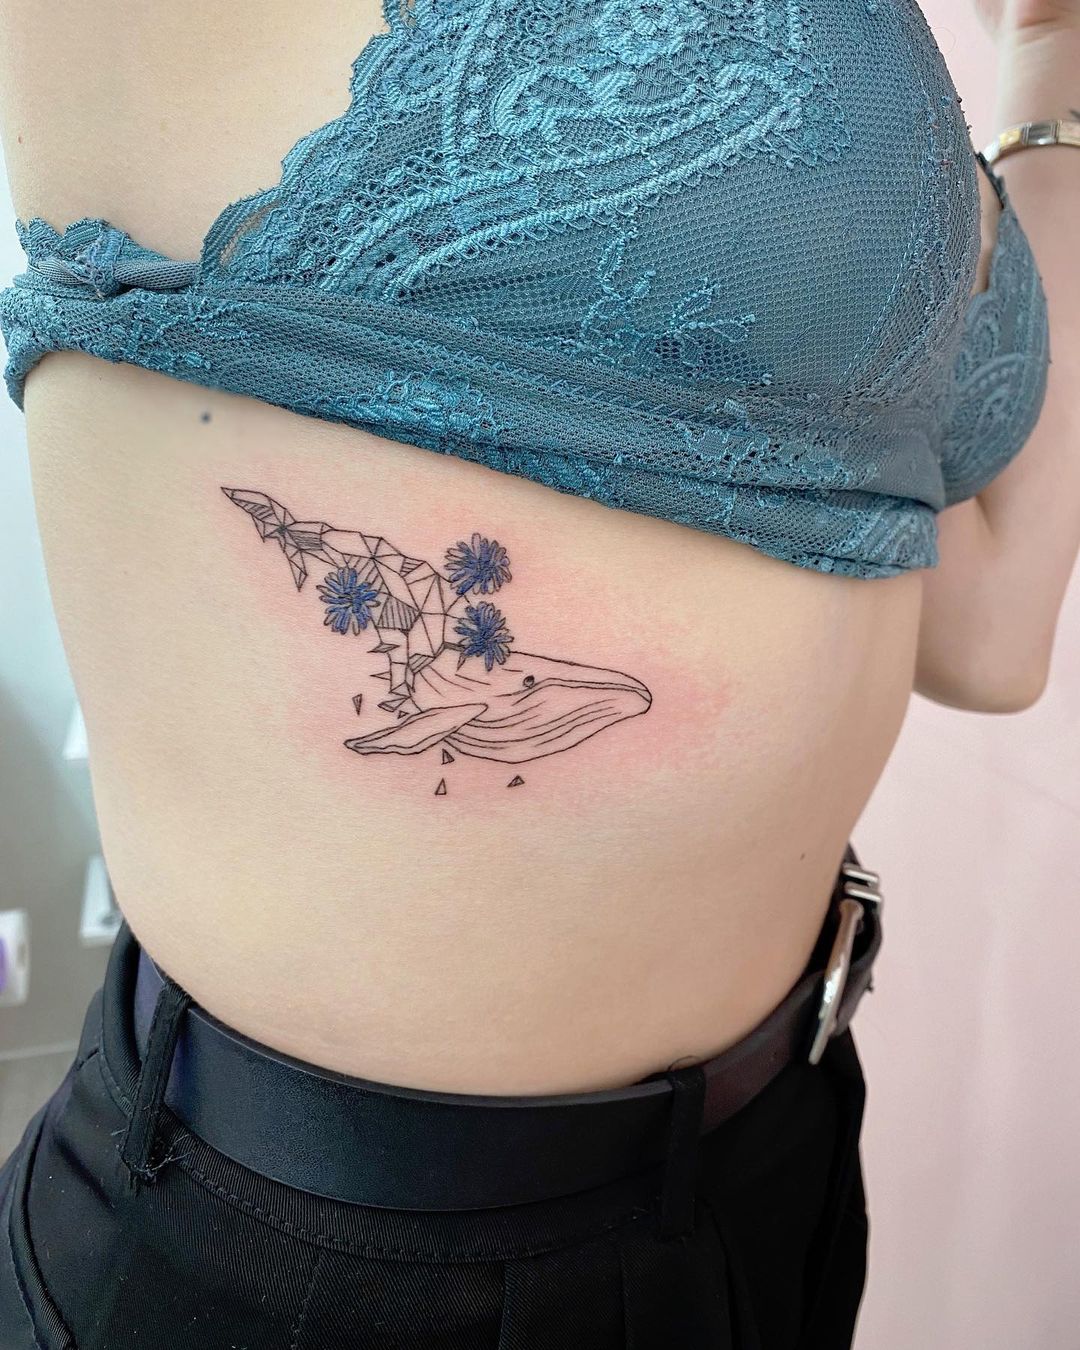 Tattoo Artist Krylo Tatyana Красноярск Russia Inkppl